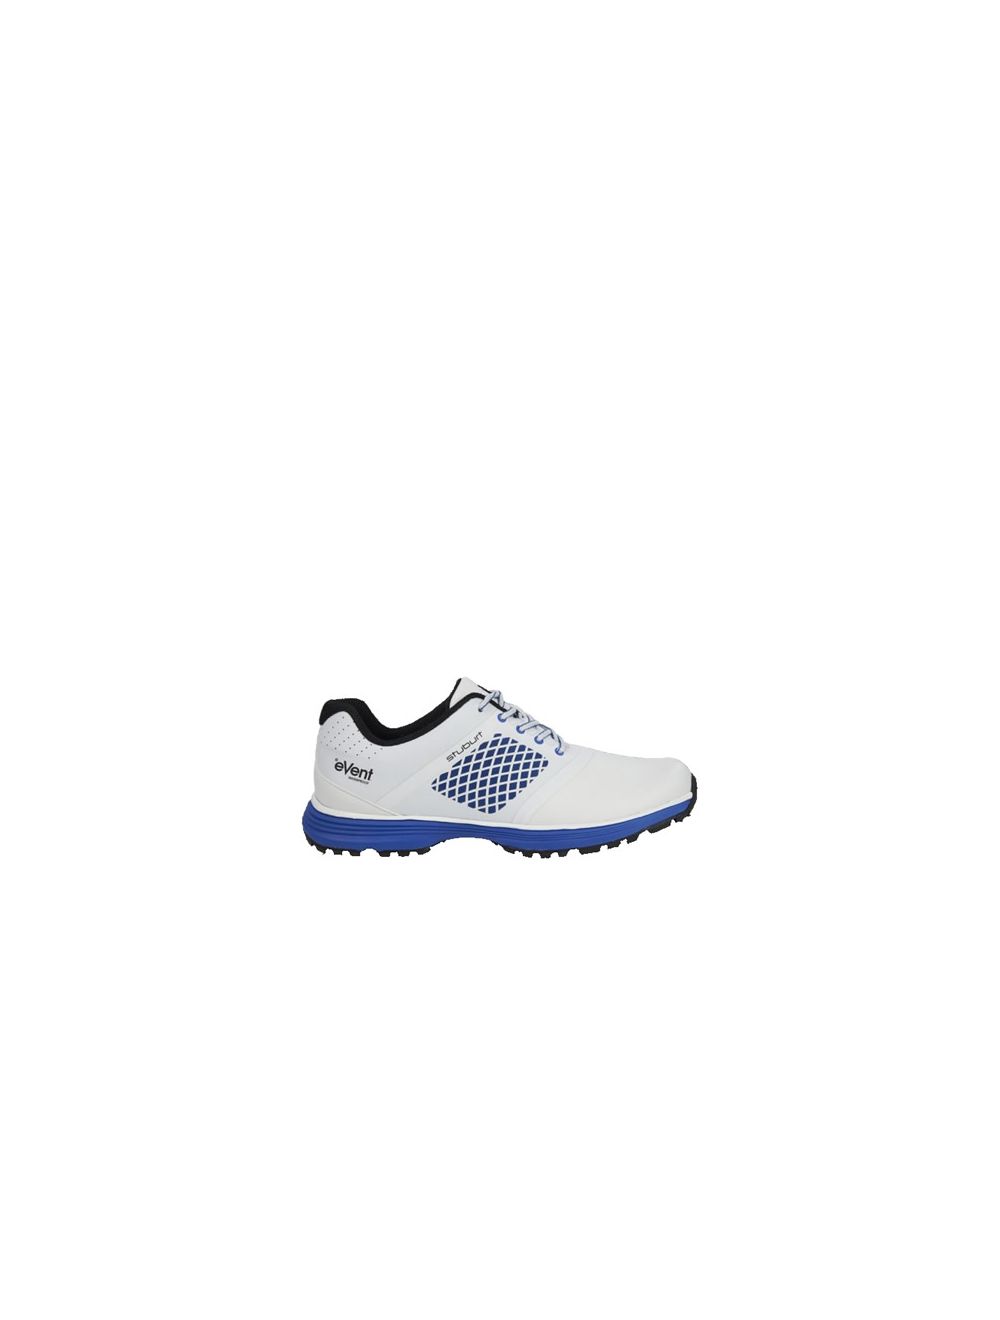 stuburt vapour event spikeless golf shoes